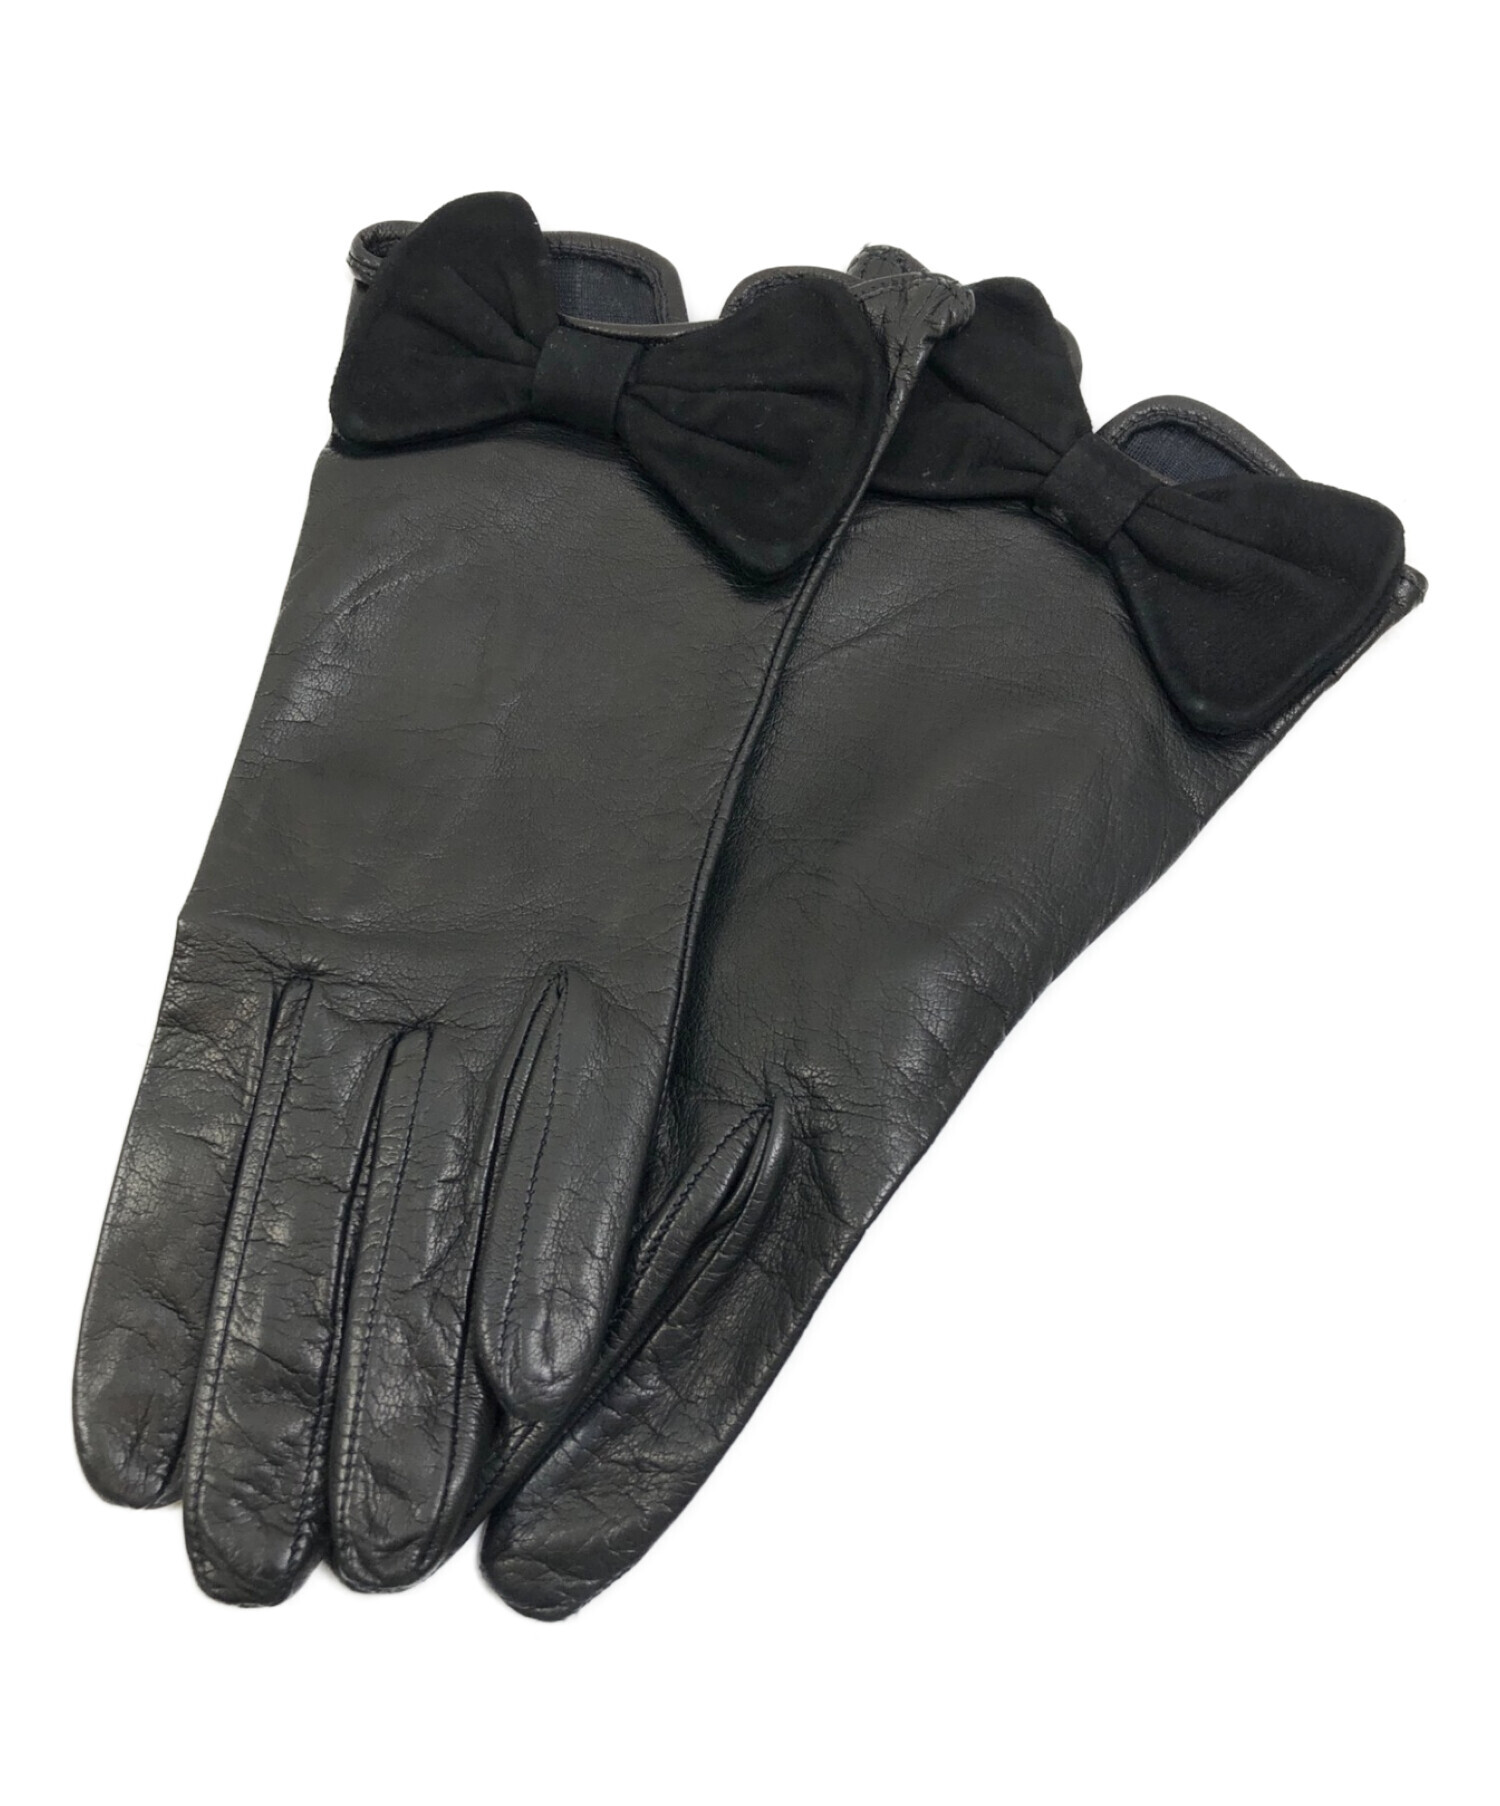 セルモネータグローブス 手袋 本革レザーグローブ イタリア製 ブランド 革手袋 小物 レディース ピンク Sermoneta Gloves 